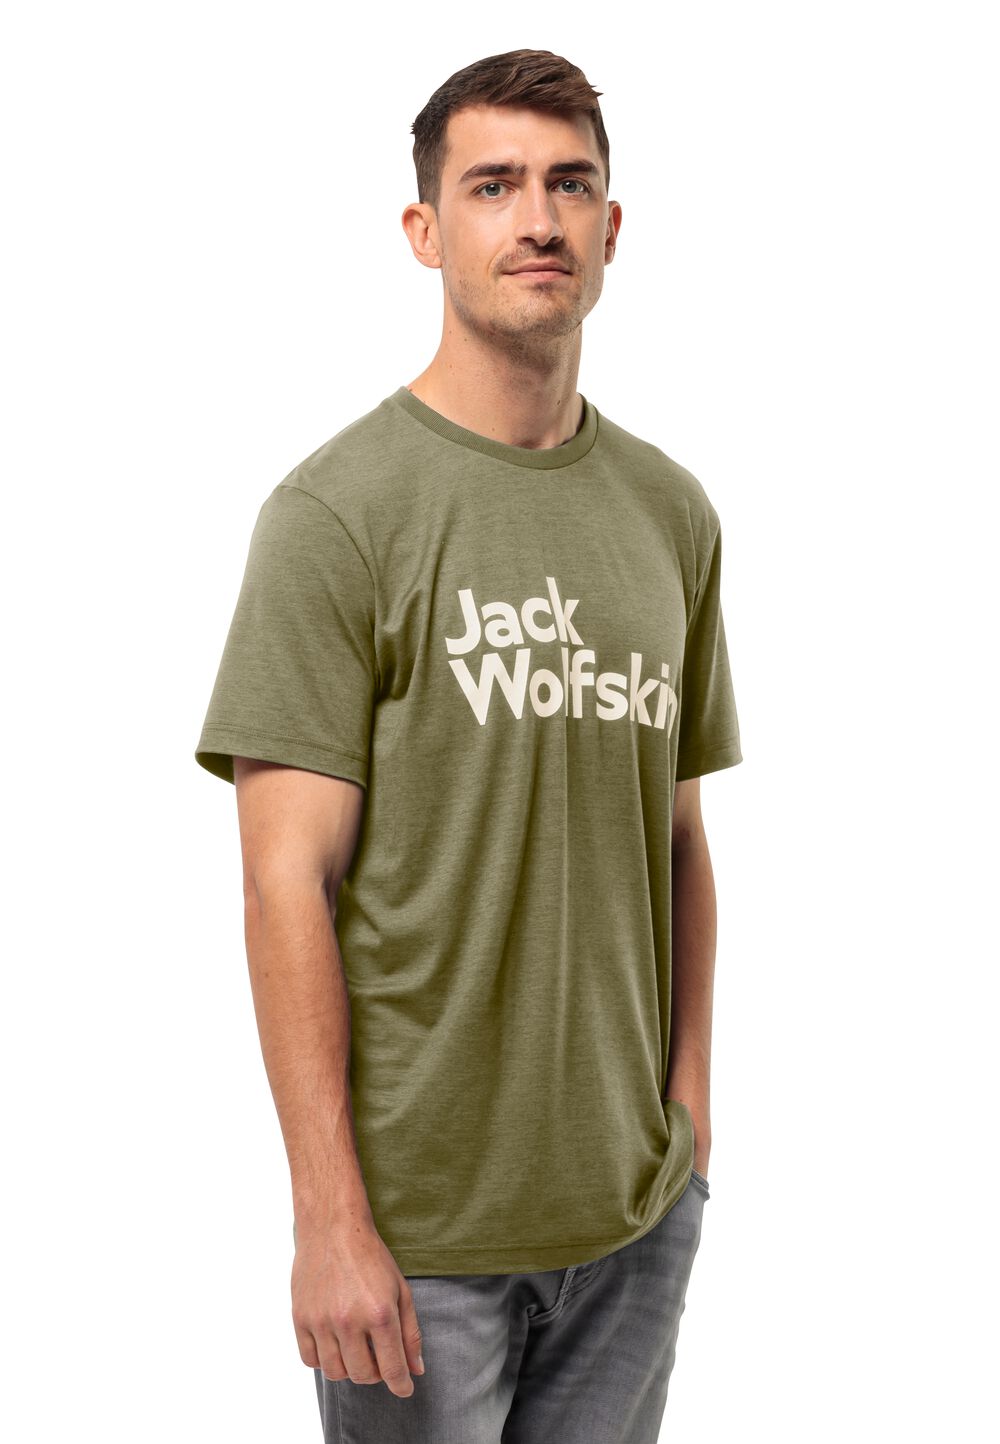 Jack Wolfskin Funktionsshirt Herren Brand T-Shirt Men M braun bay leaf von Jack Wolfskin